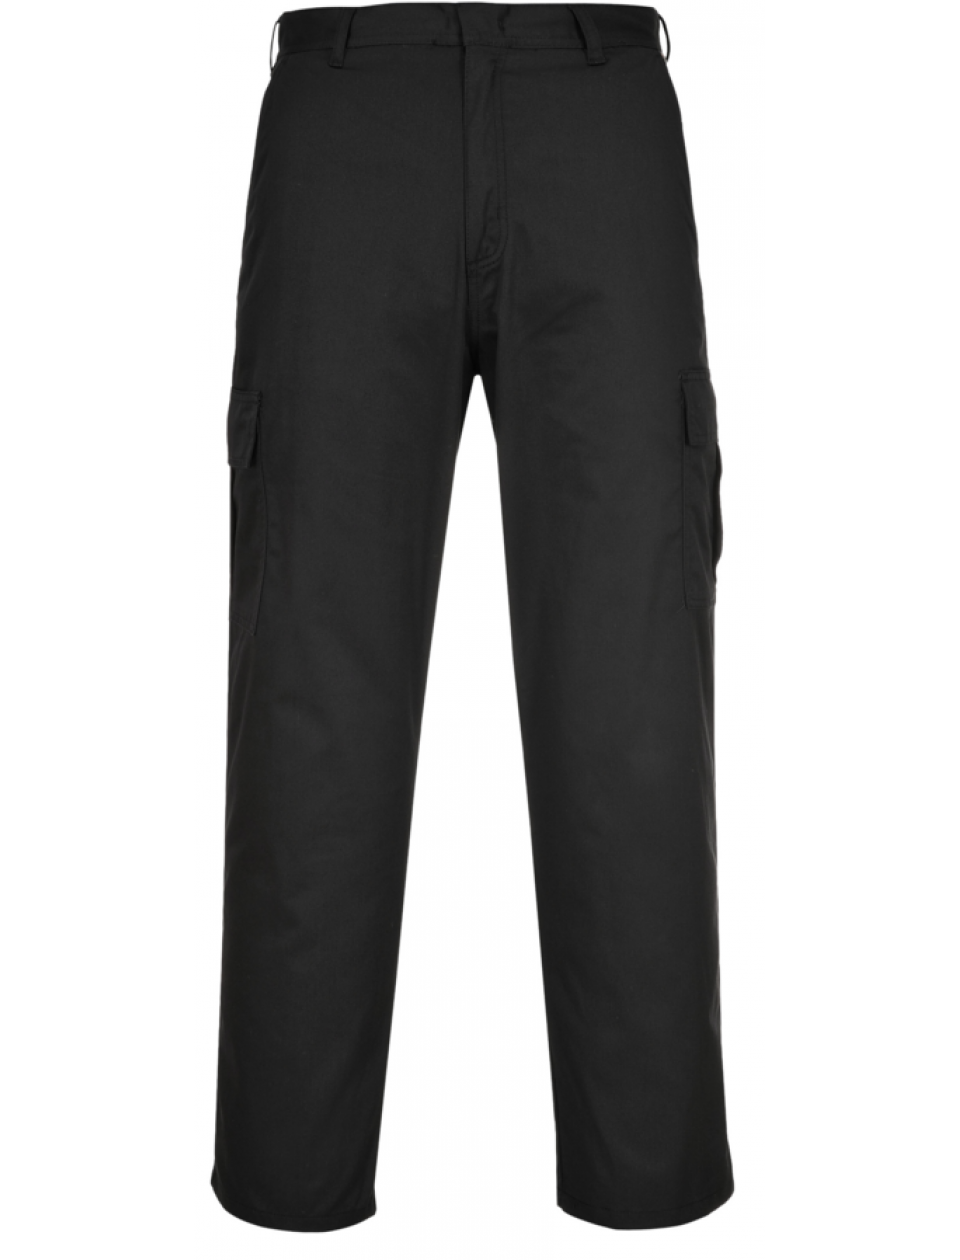 Portwest Combat Trousers C701 - Black